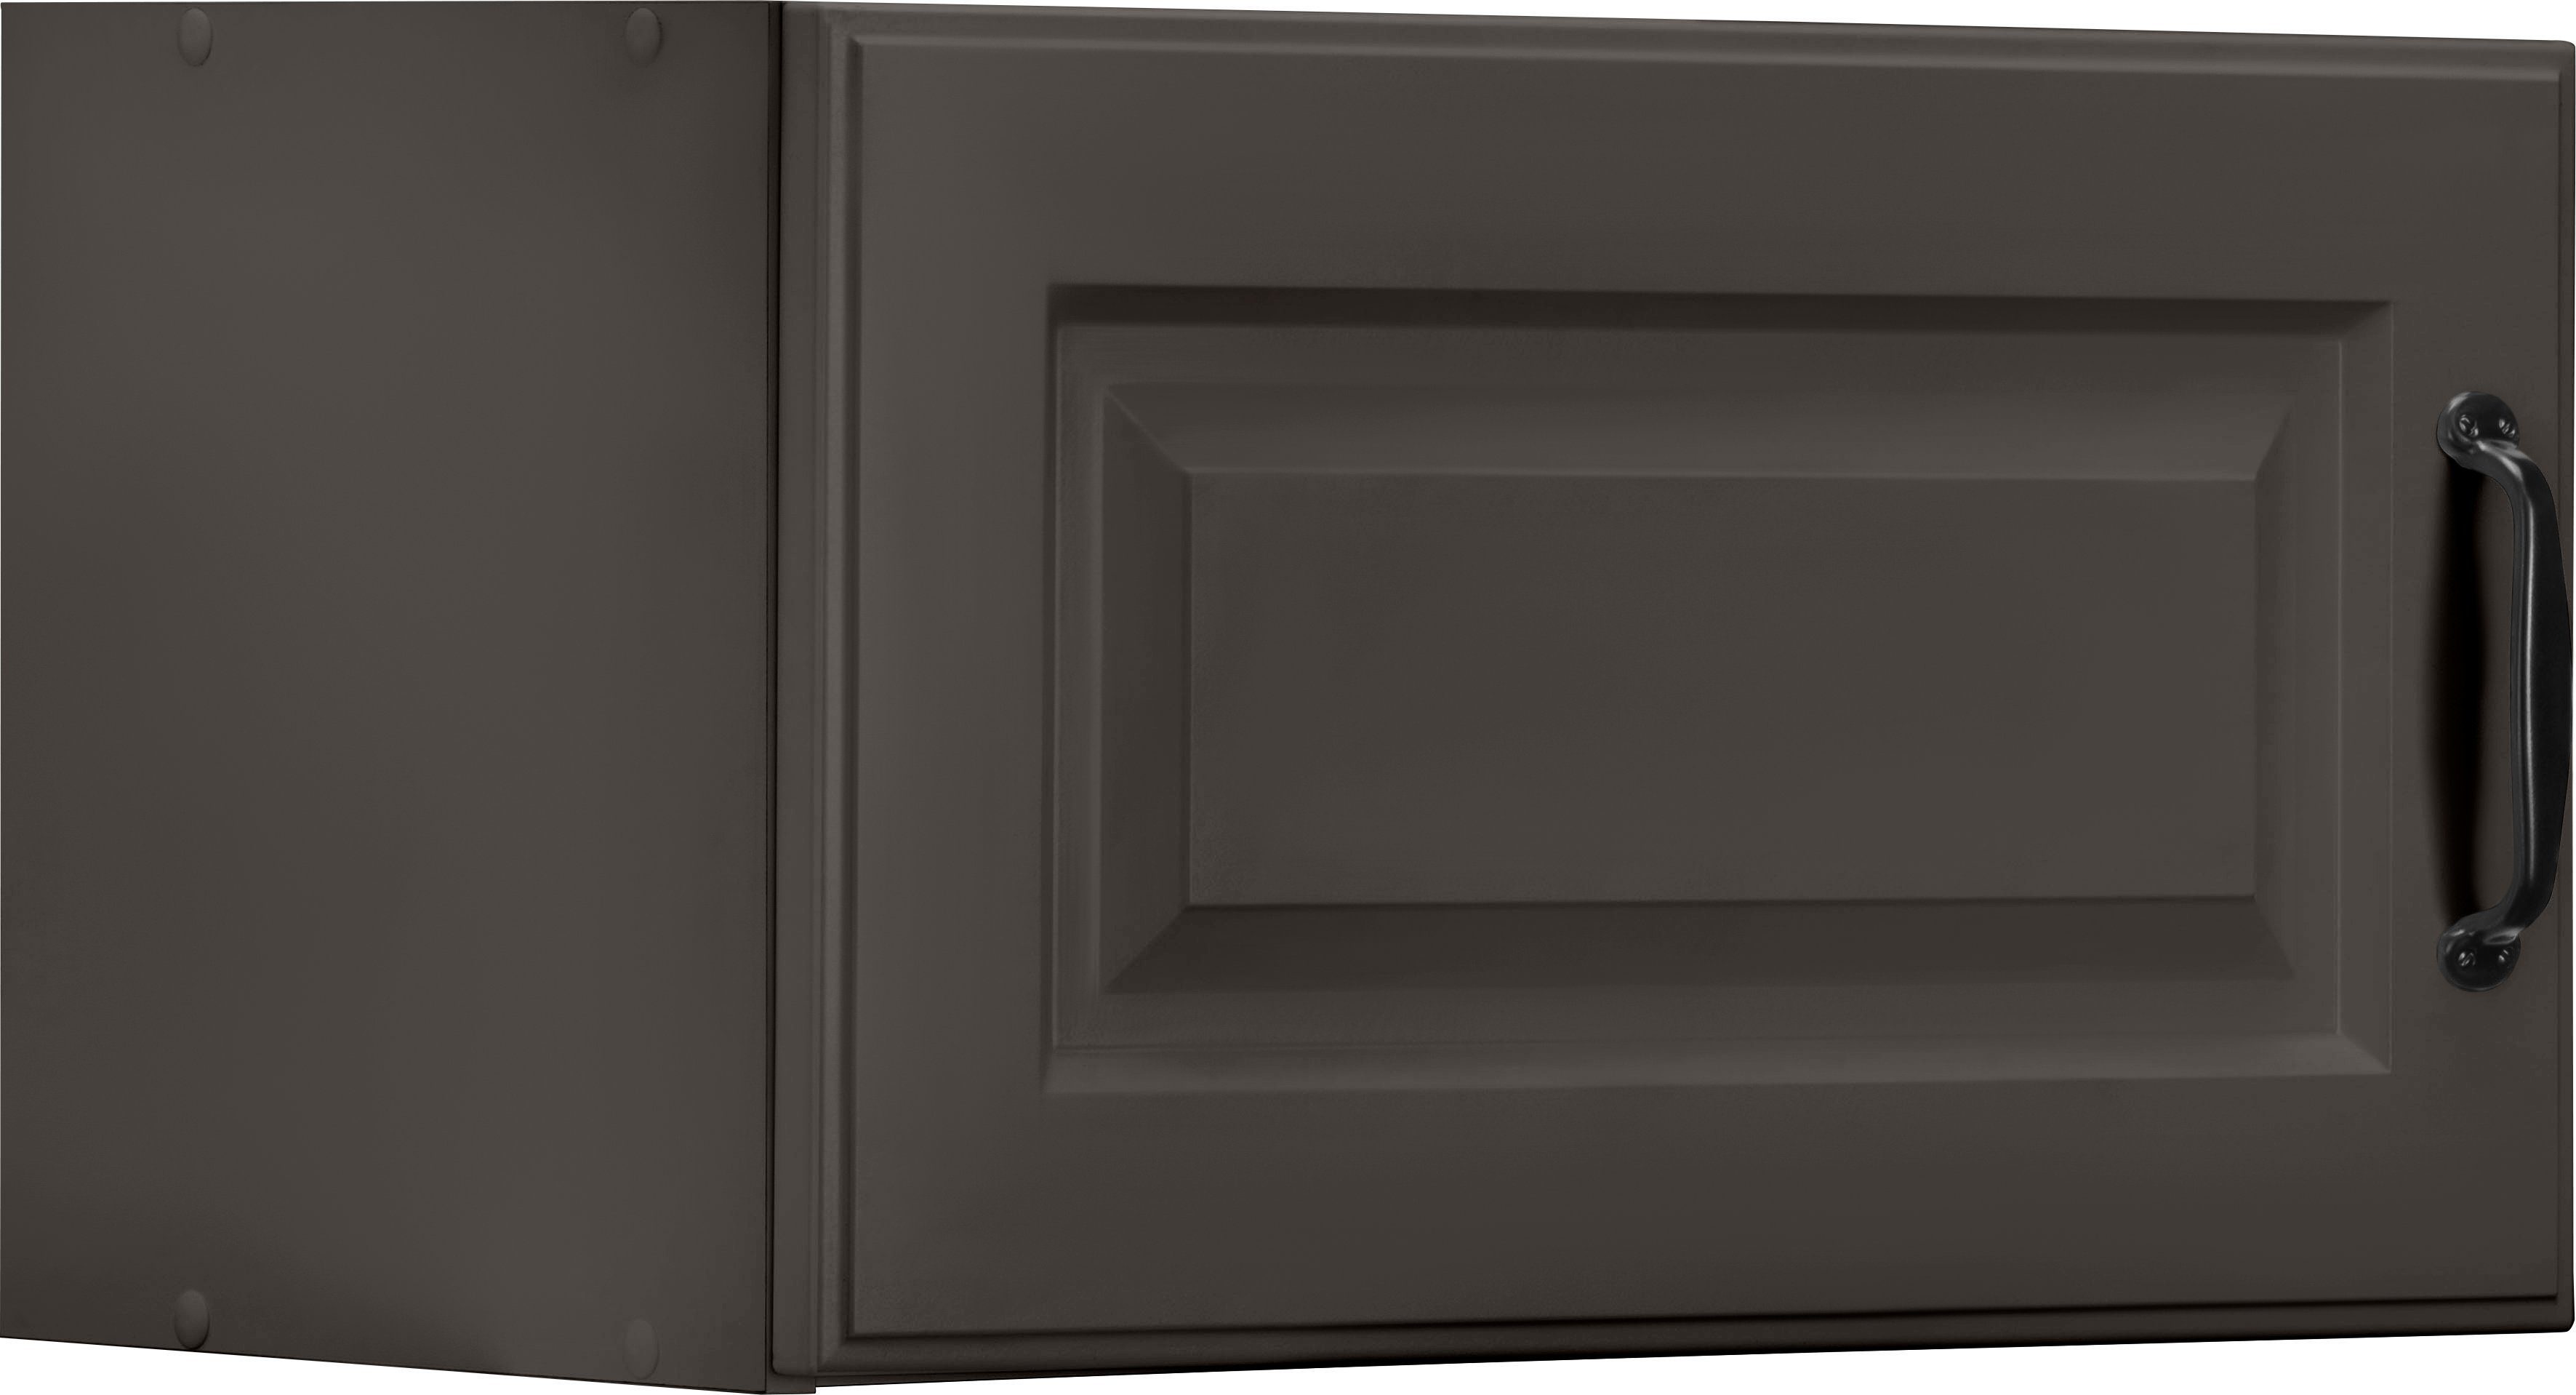 wiho Küchen Kurzhängeschrank Erla 60 cm breit mit Kassettenfront Anthrazit/Anthrazit | Anthrazit